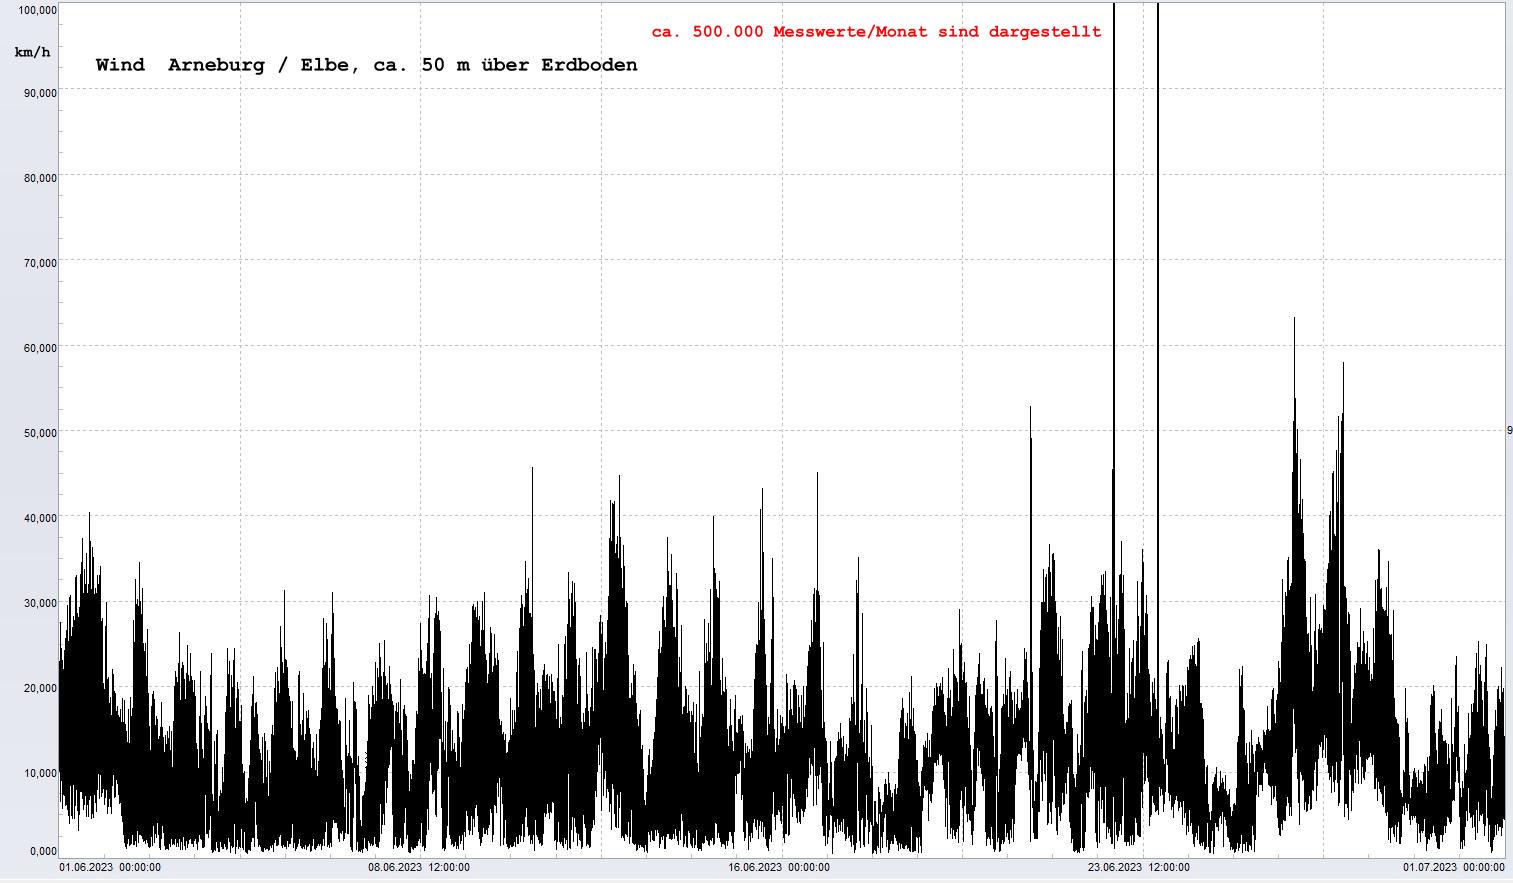 Arneburg Winddaten Monat Juni 2023, 
  Sensor auf Gebude, ca. 50 m ber Erdboden, 5s-Aufzeichnung